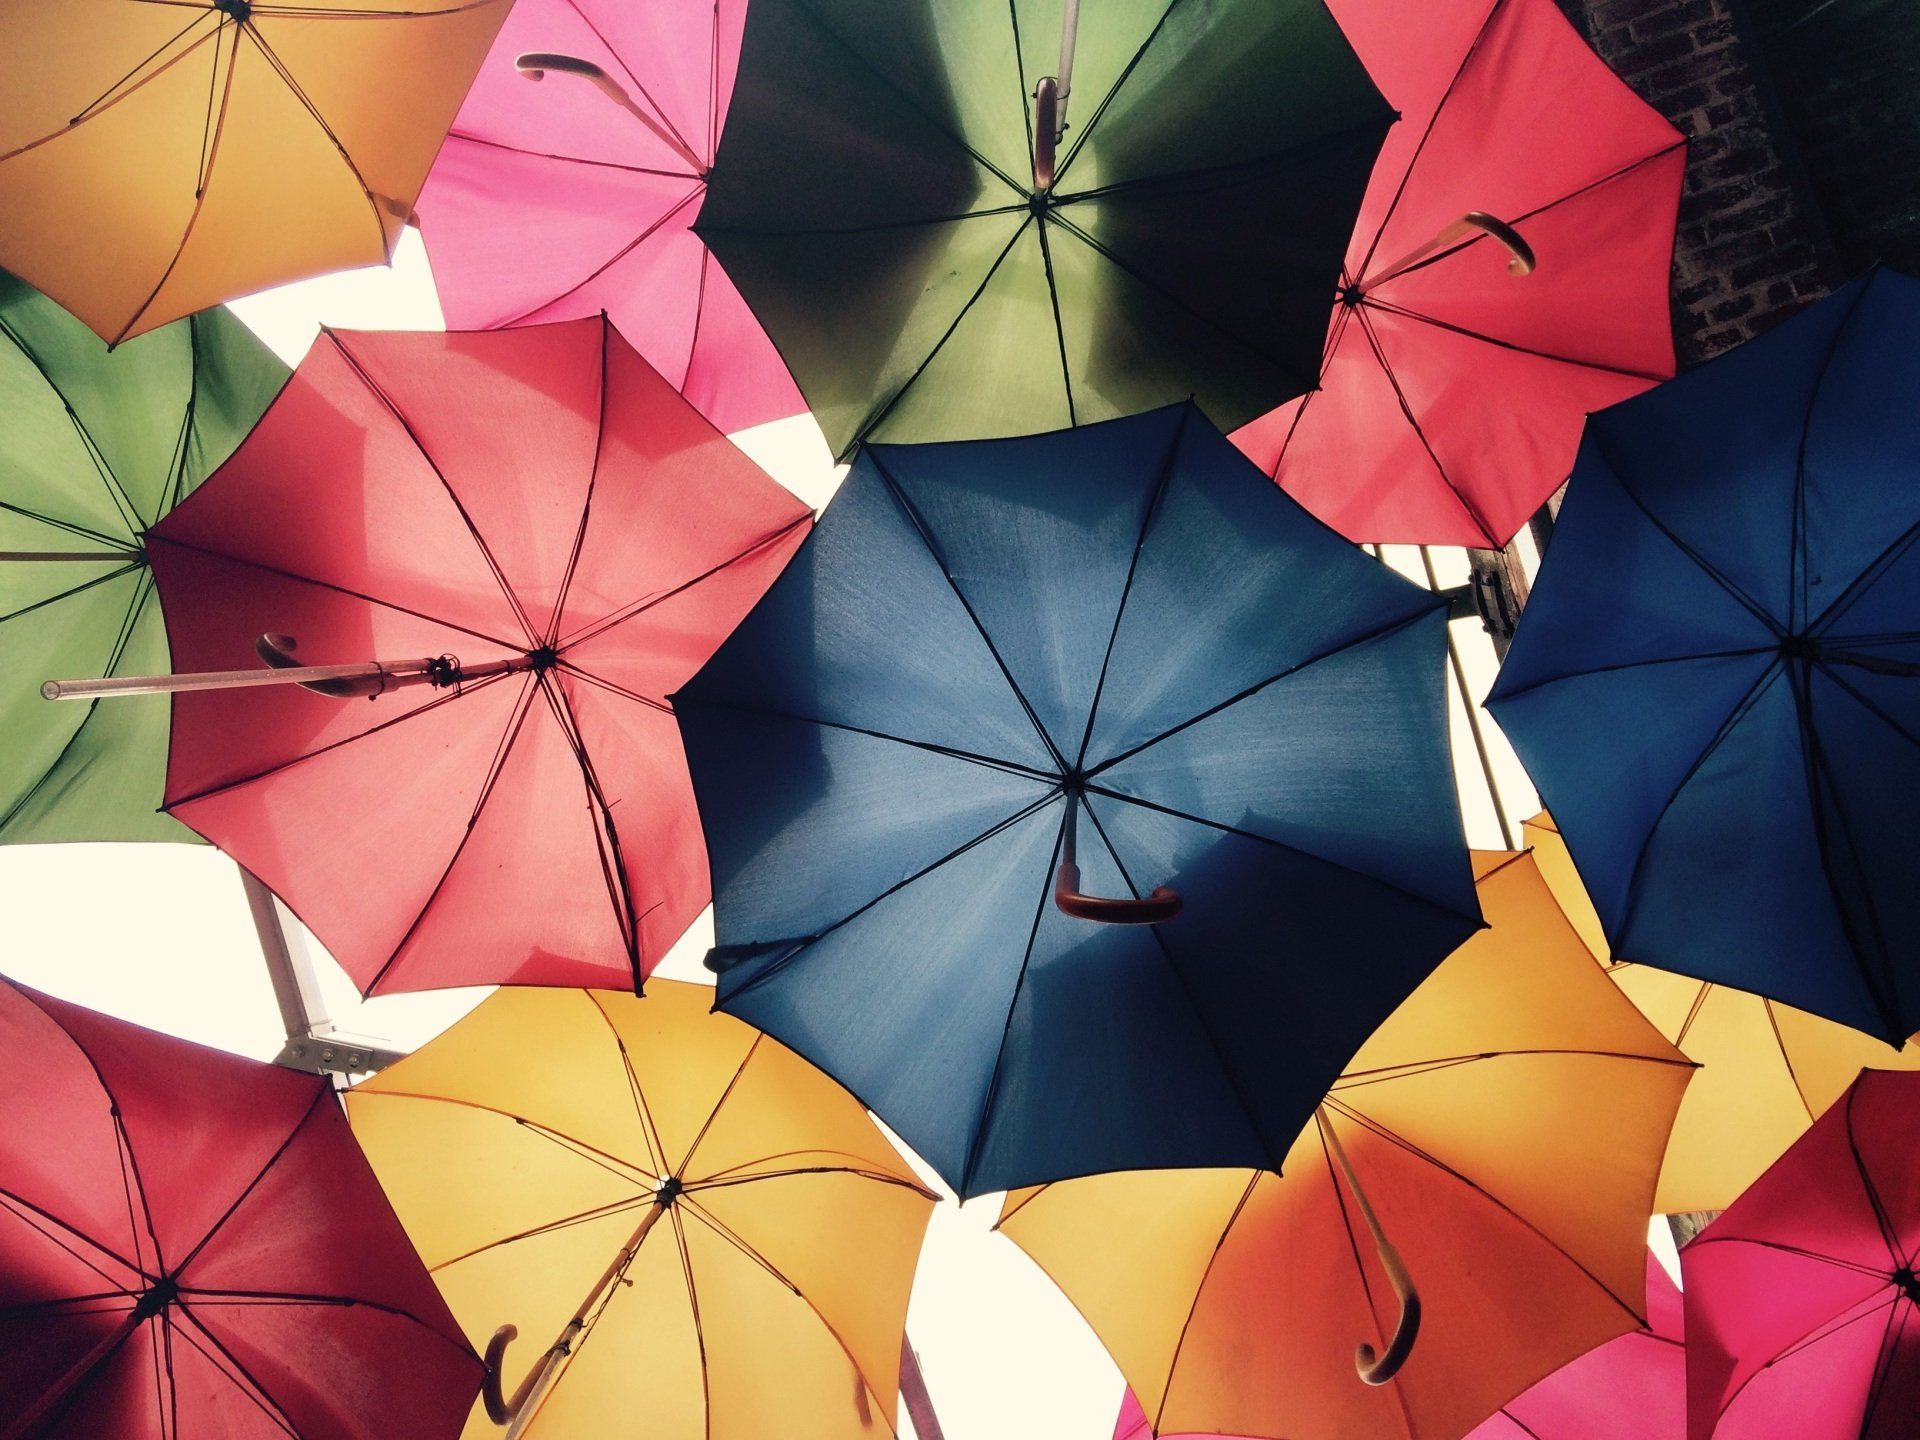 Umbrellas depicting Insurance Coverage